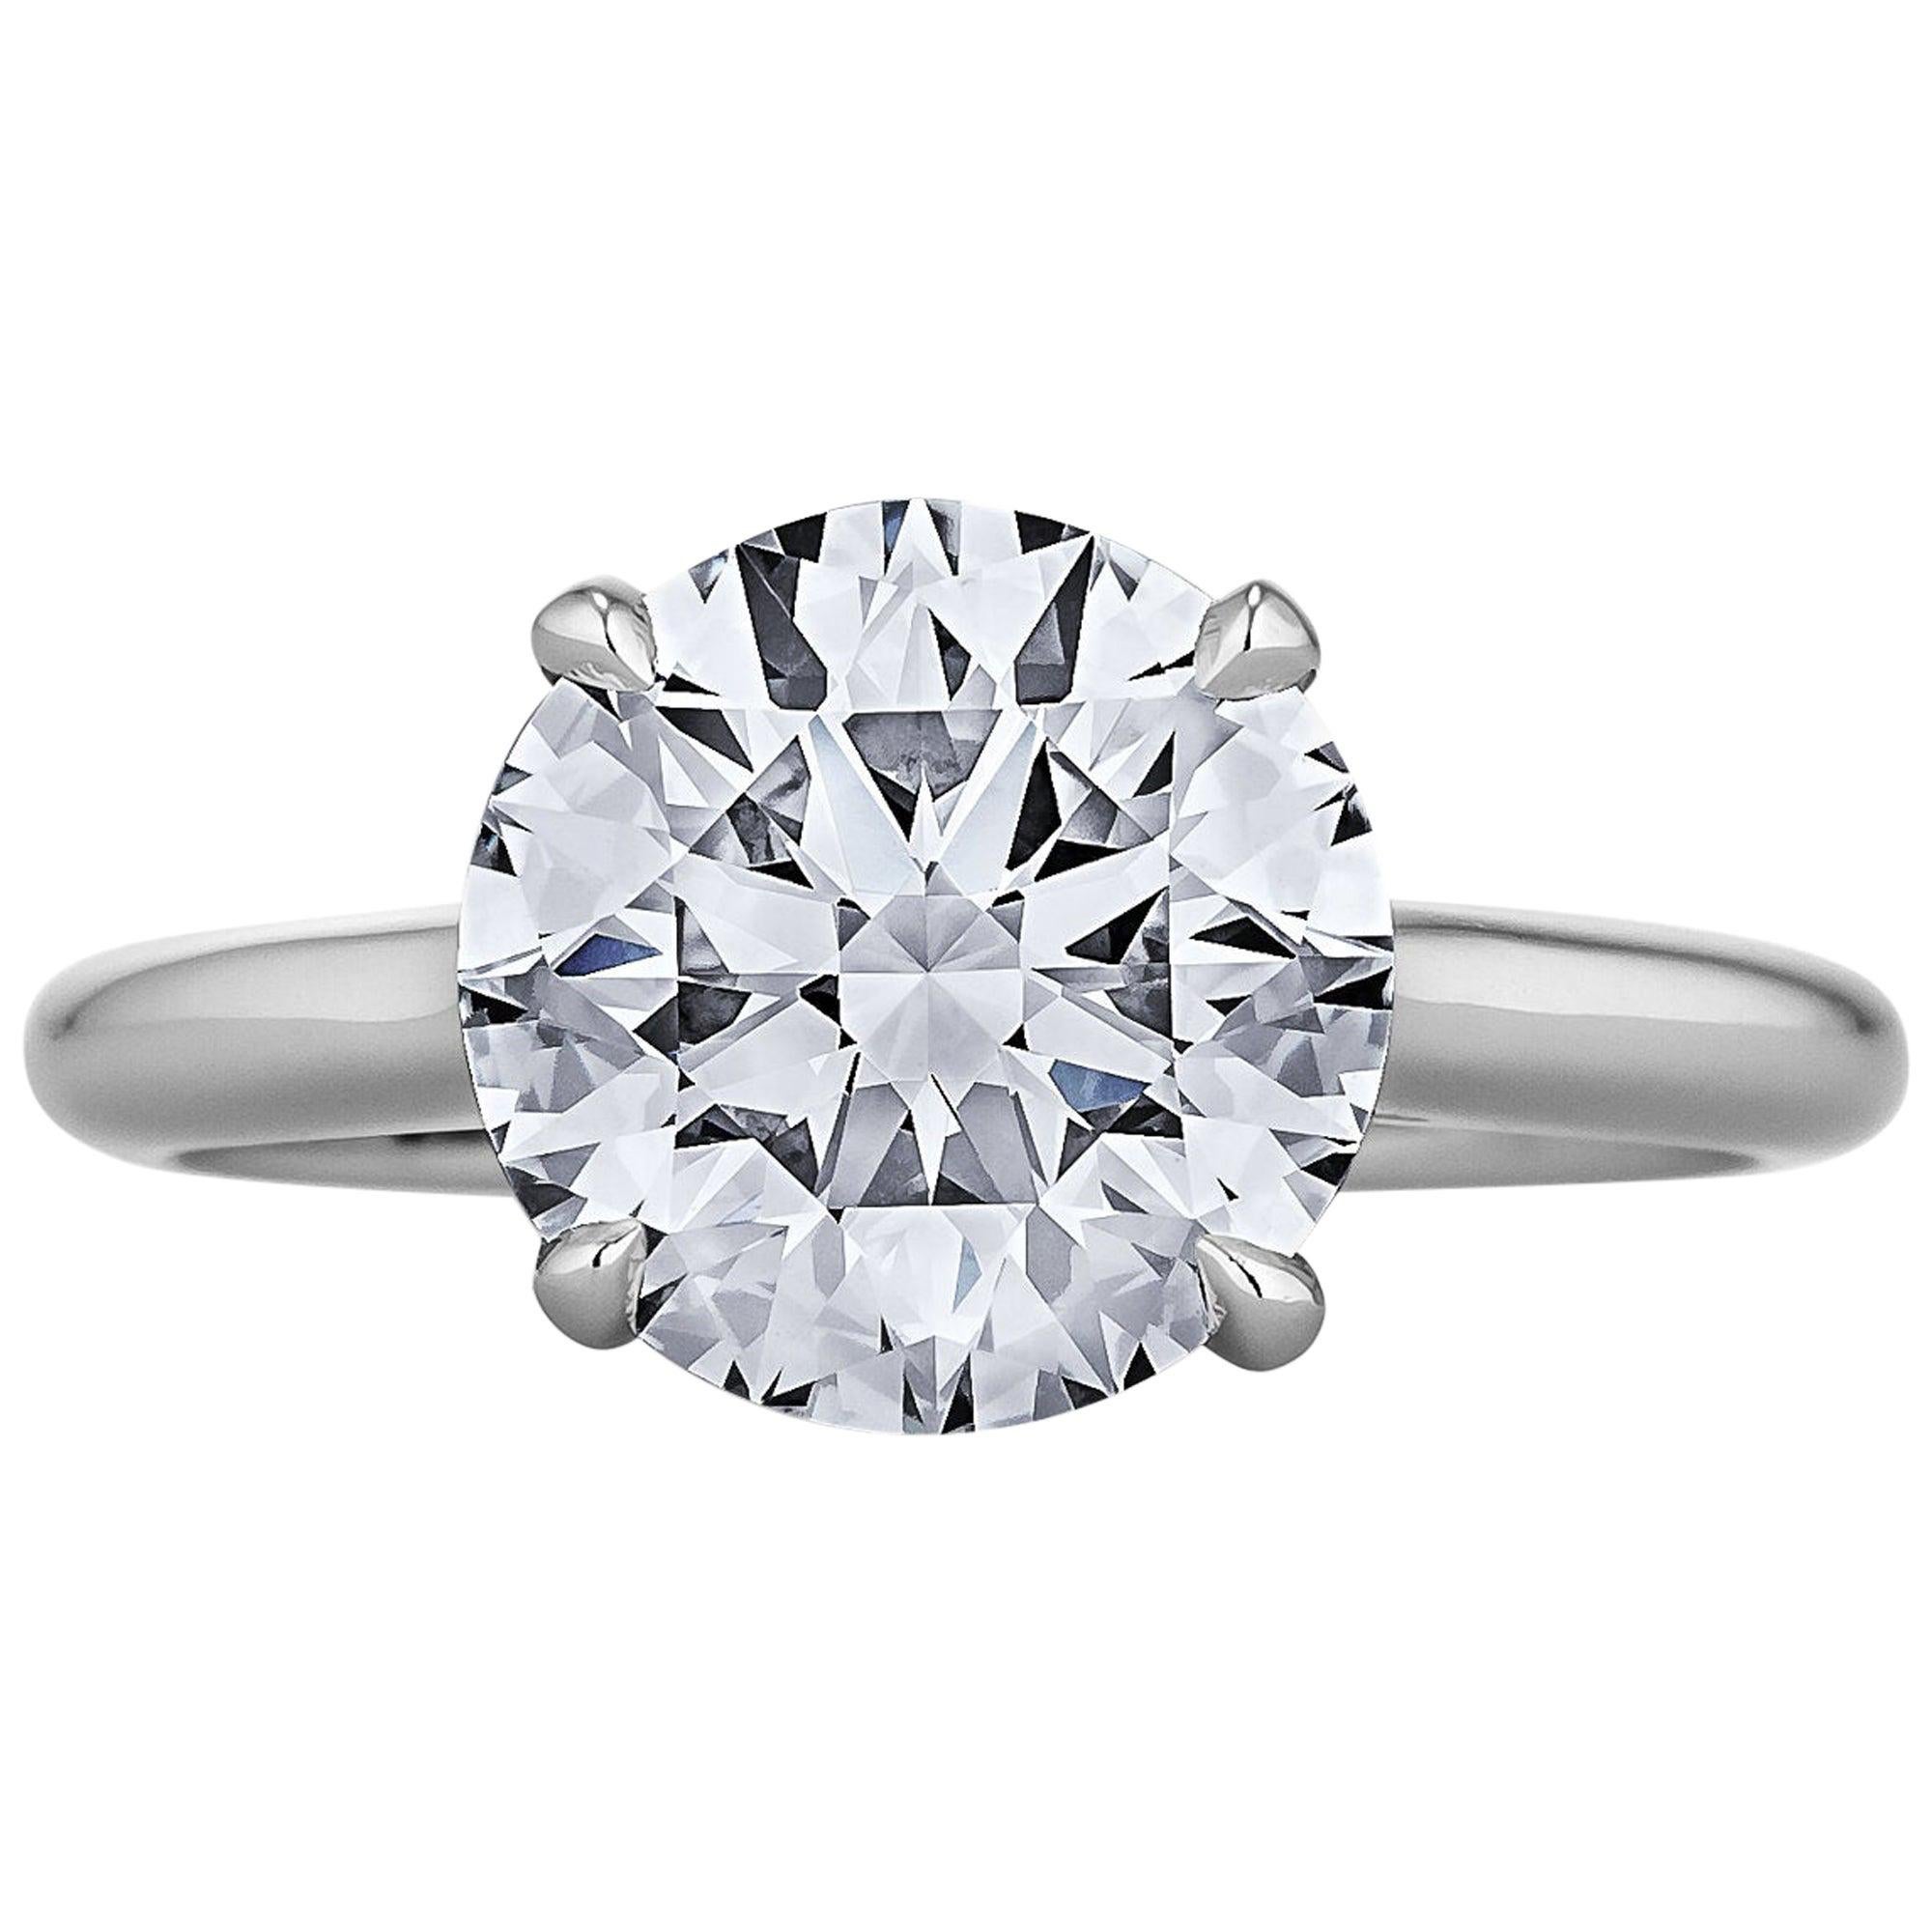 2.55 Carat Ideal Cut Round Brilliant Diamond Platinum Engagement Ring